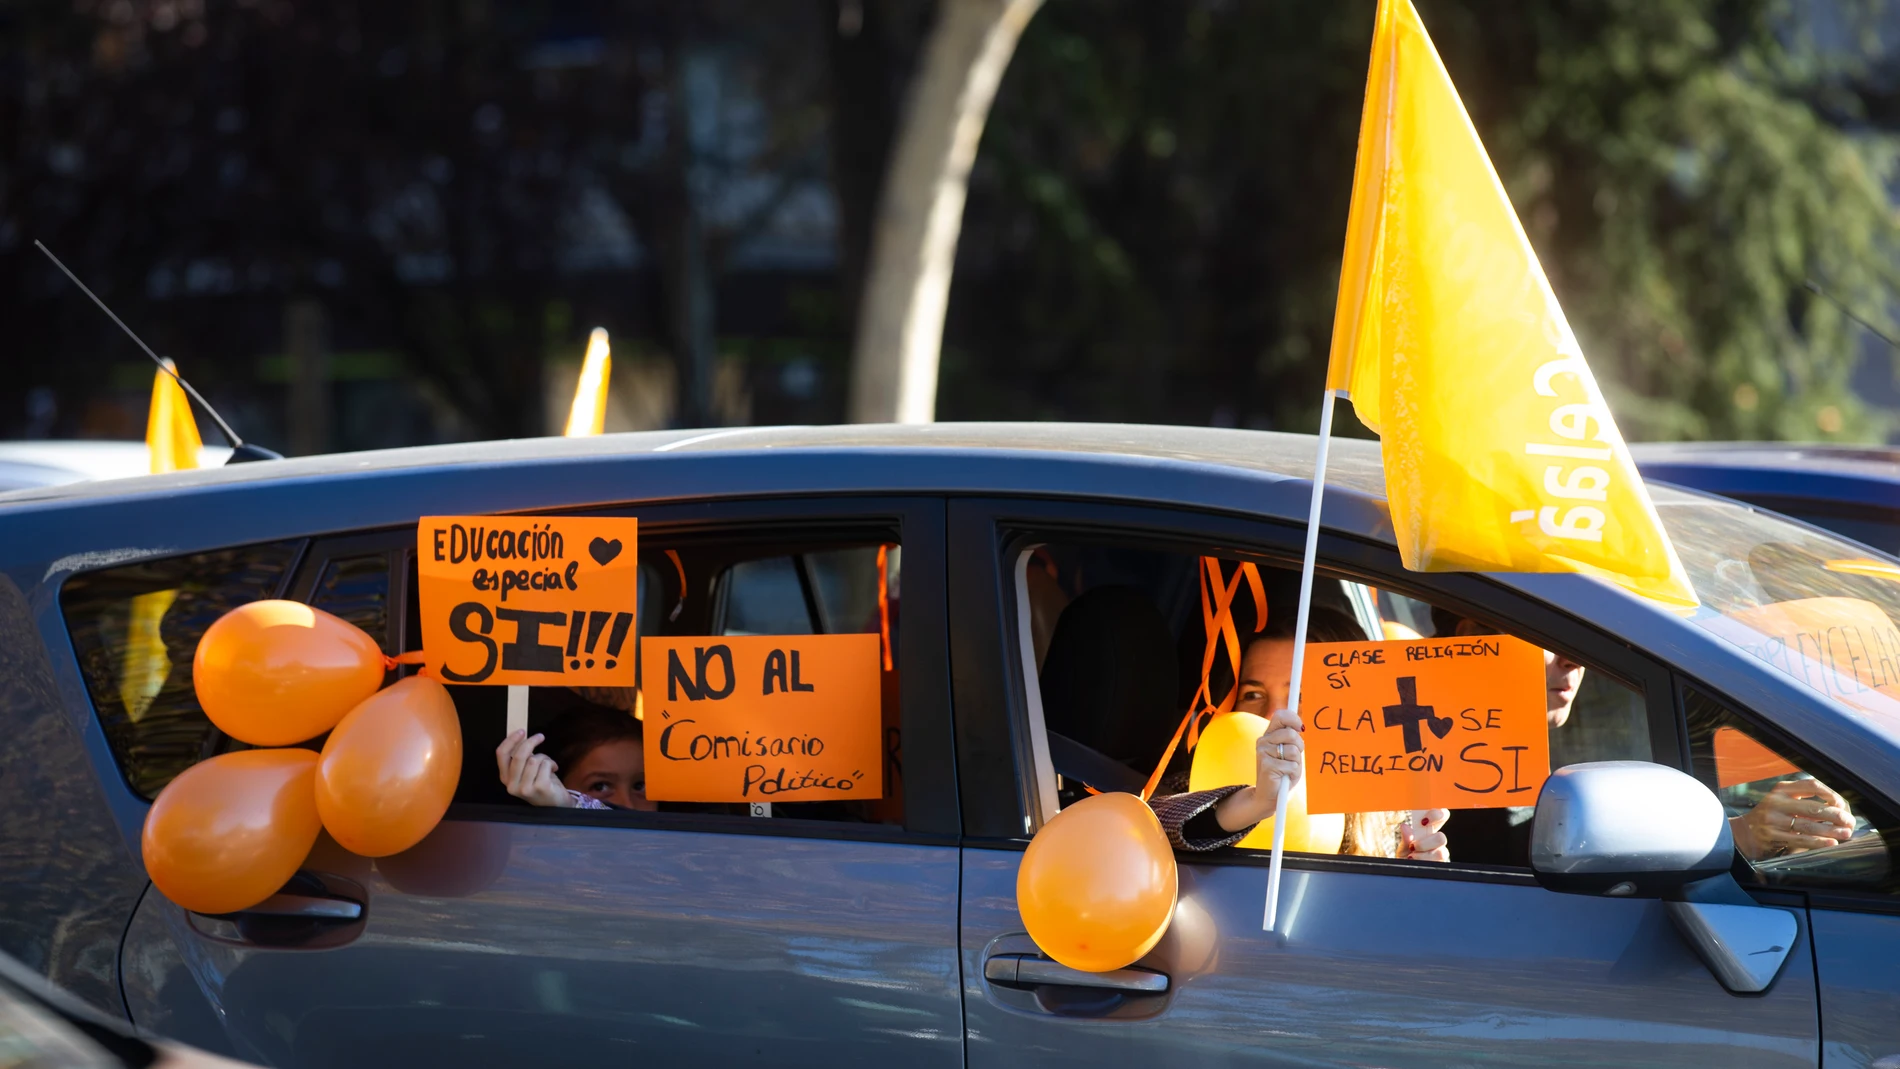 Manifestación en el centro de Madrid contra la Ley Celaa de educación. Centenares de coches protestan por la nueva Ley de educación aprobada esta semana en el Congreso.